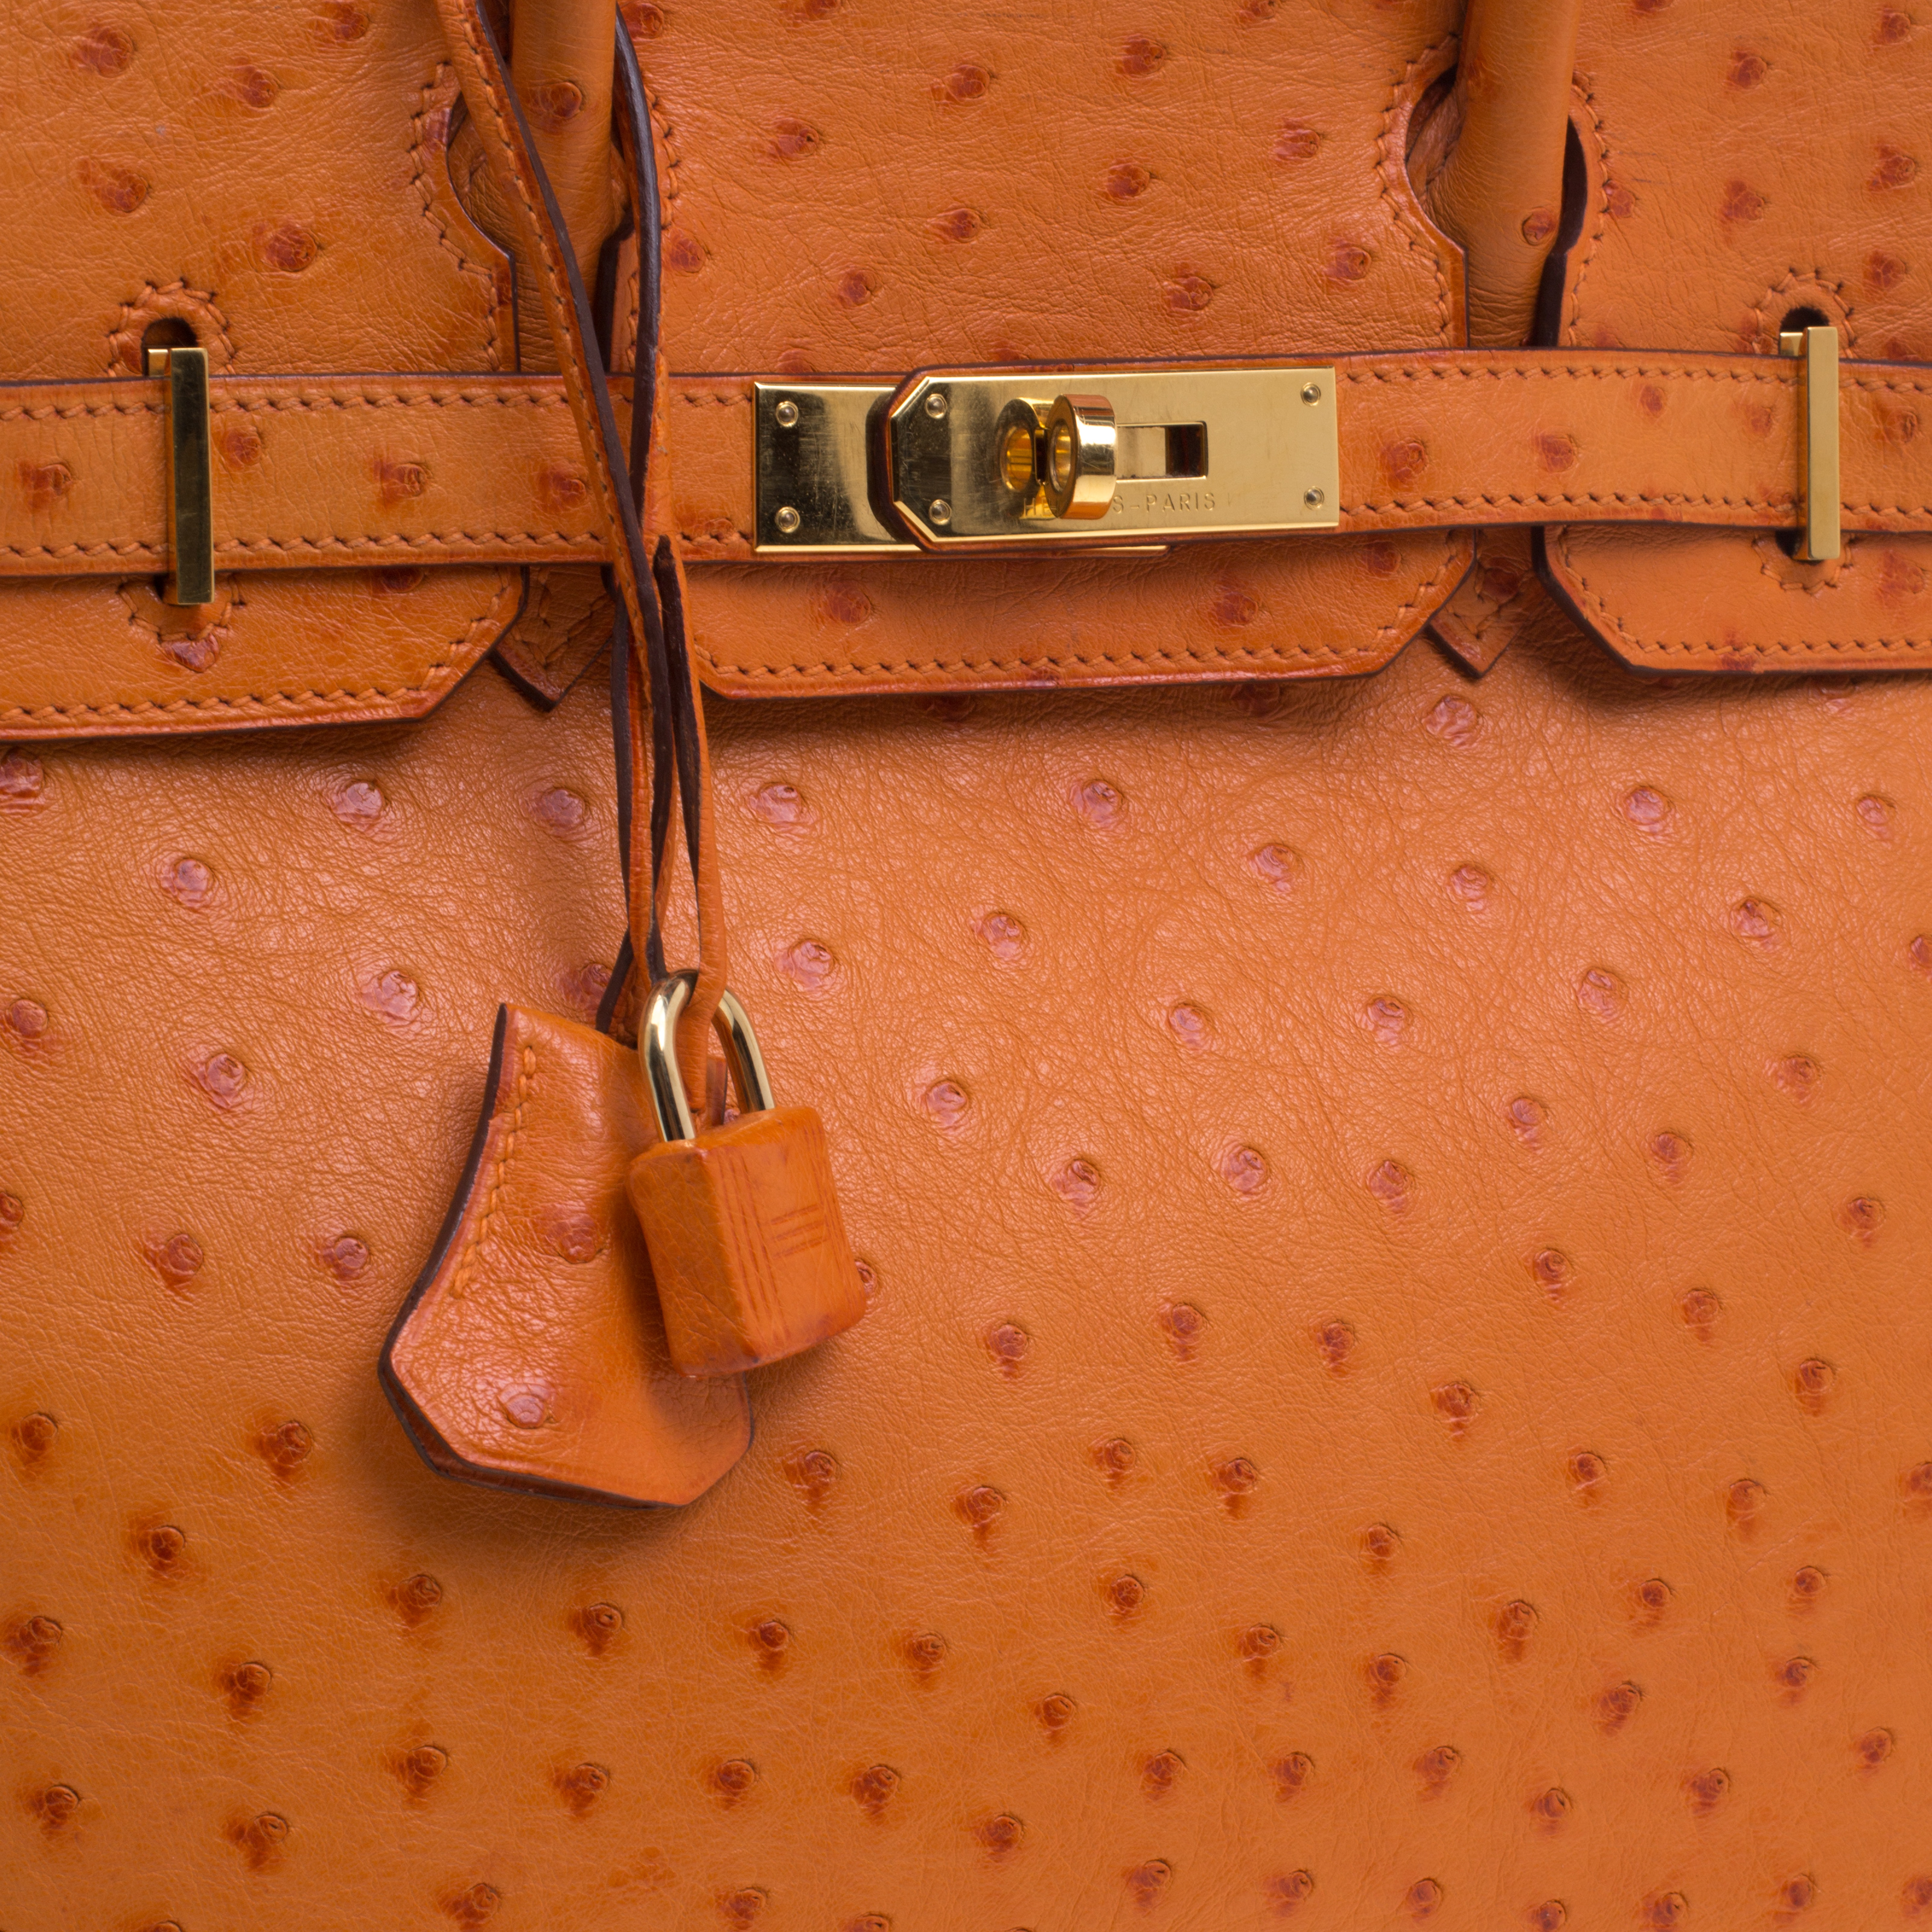 Hermès Birkin 30 Ostrich Leather Graphite Bag - Gold Hardware